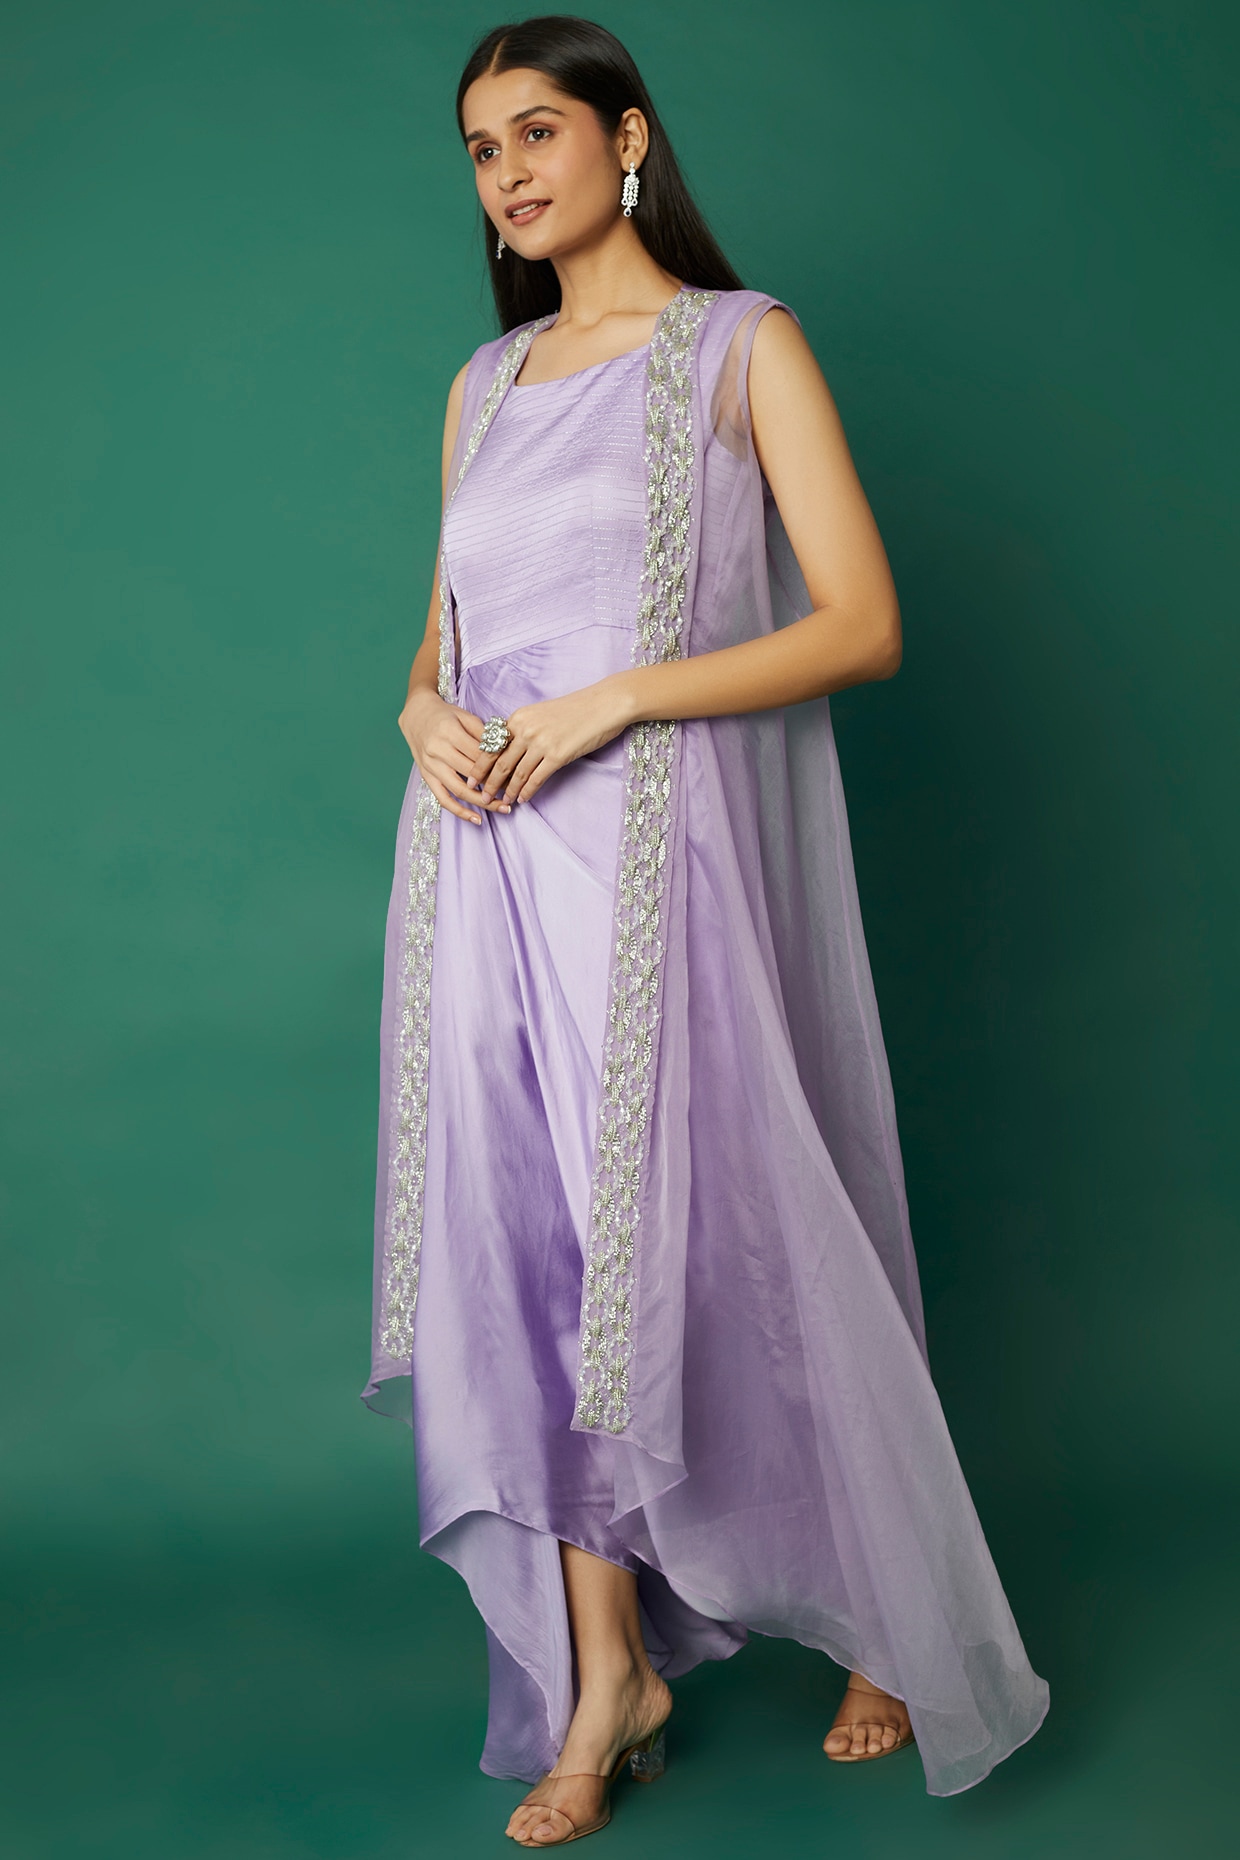 Lavender Satin Prom Dresses One Shoulder Formal Gown fd2716 – Viniodress